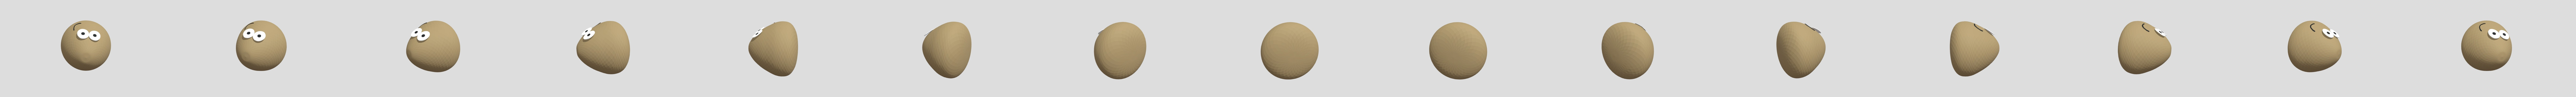 Pou 3D models - Sketchfab